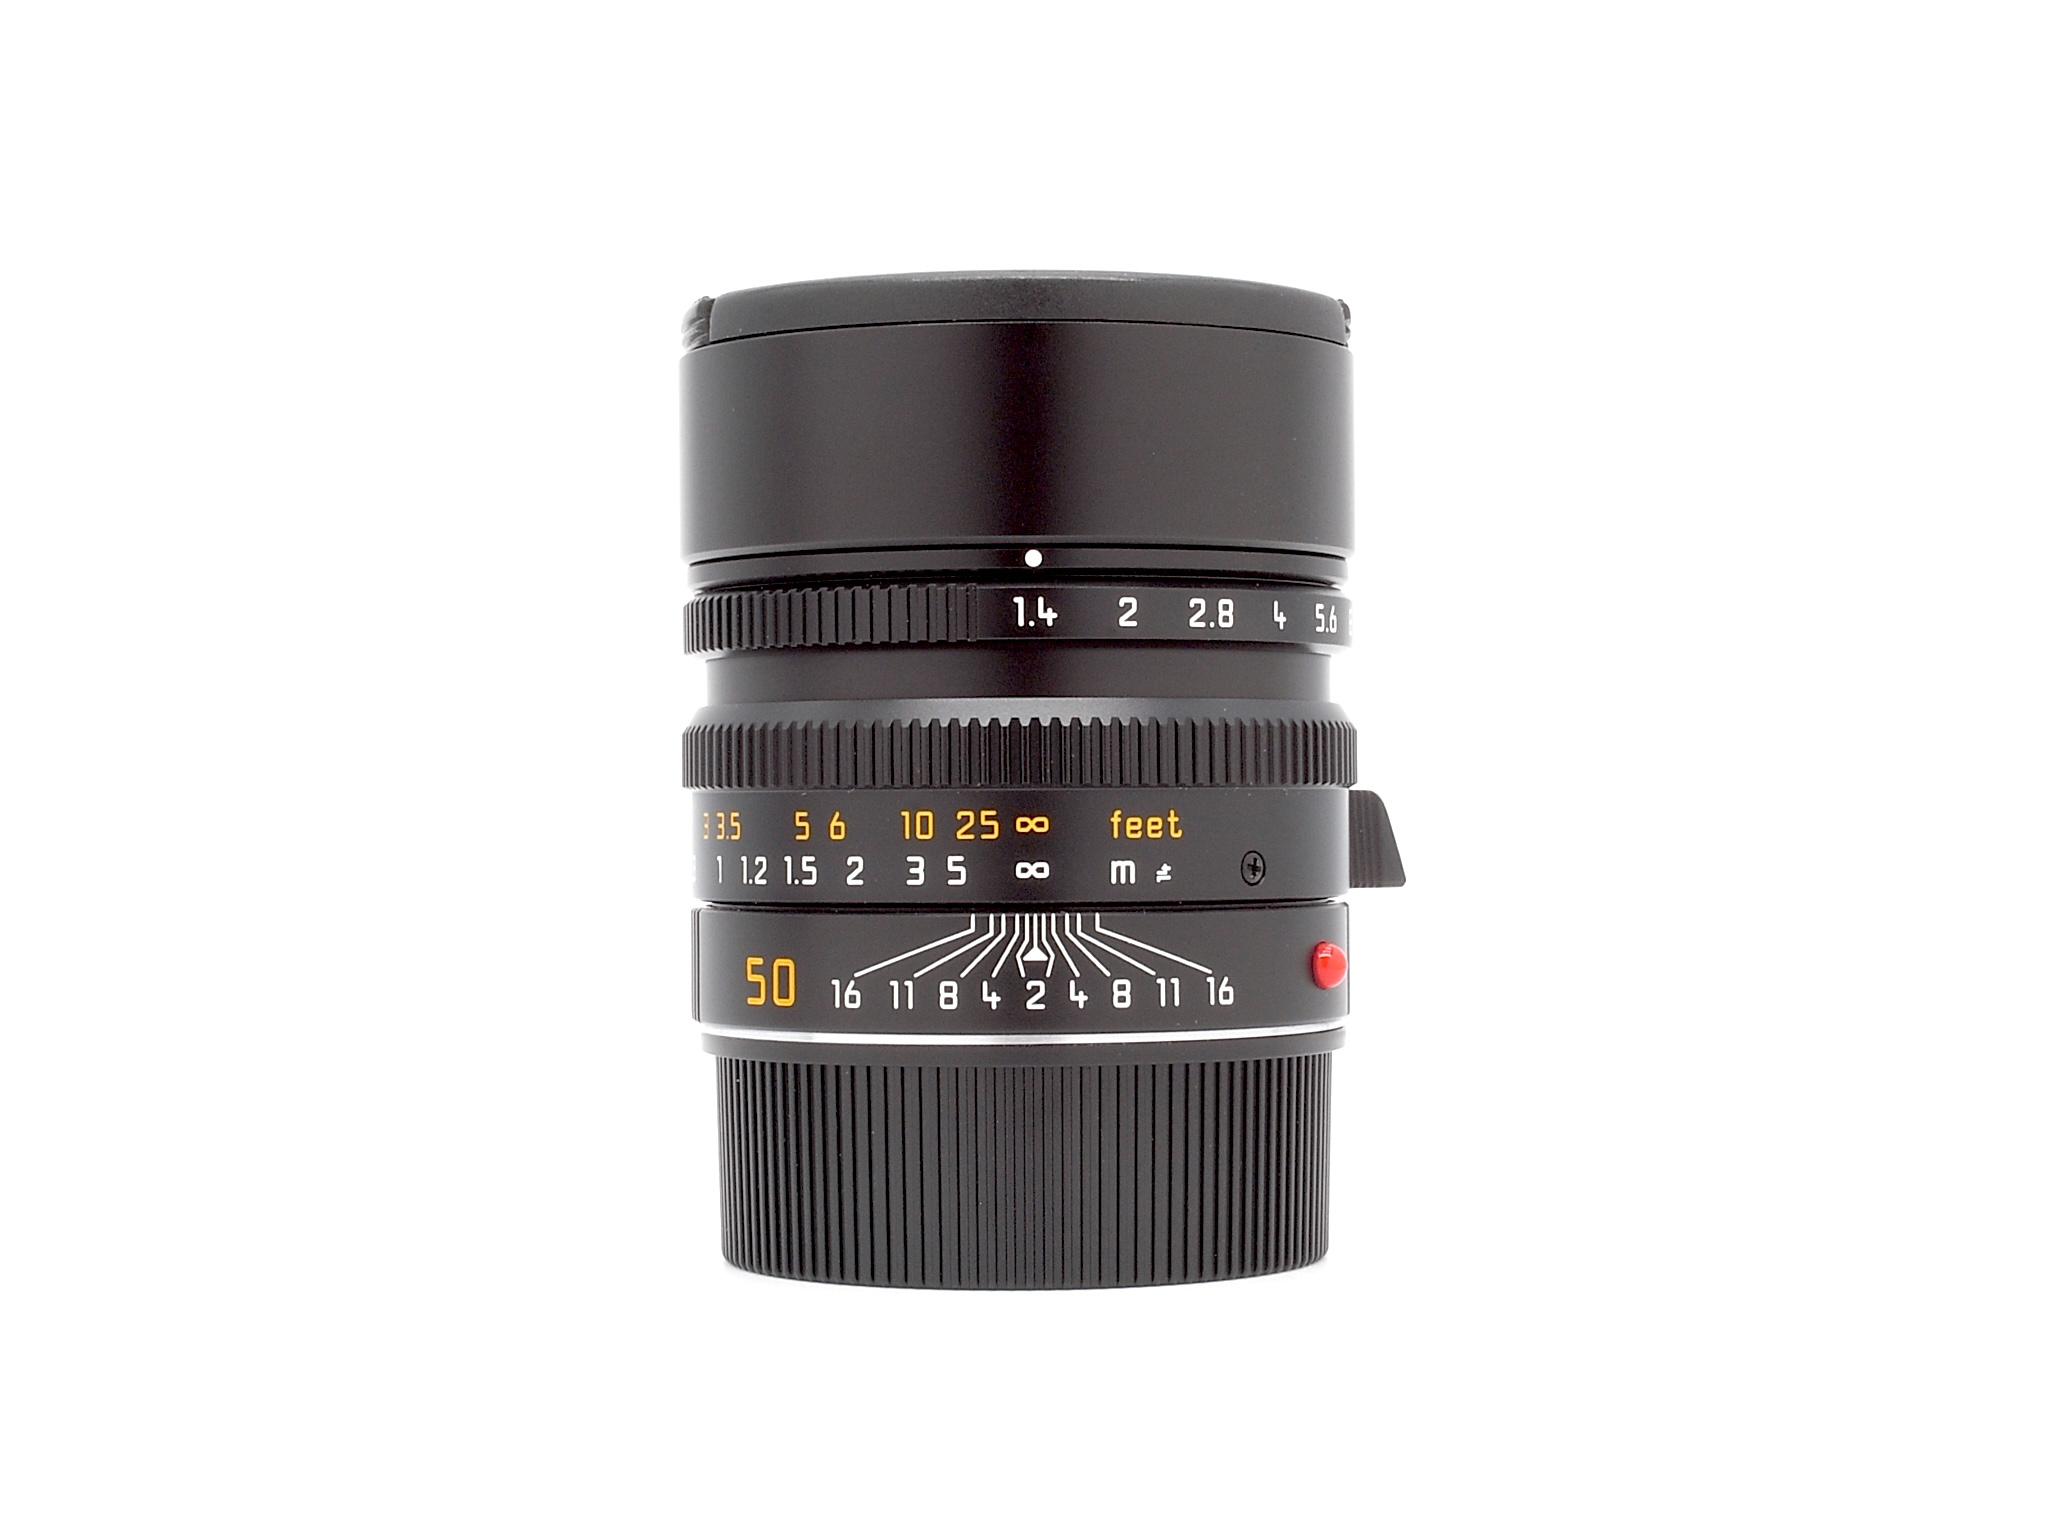 Leica Summilux-M 1.4/50mm ASPH. schwarz 6Bit